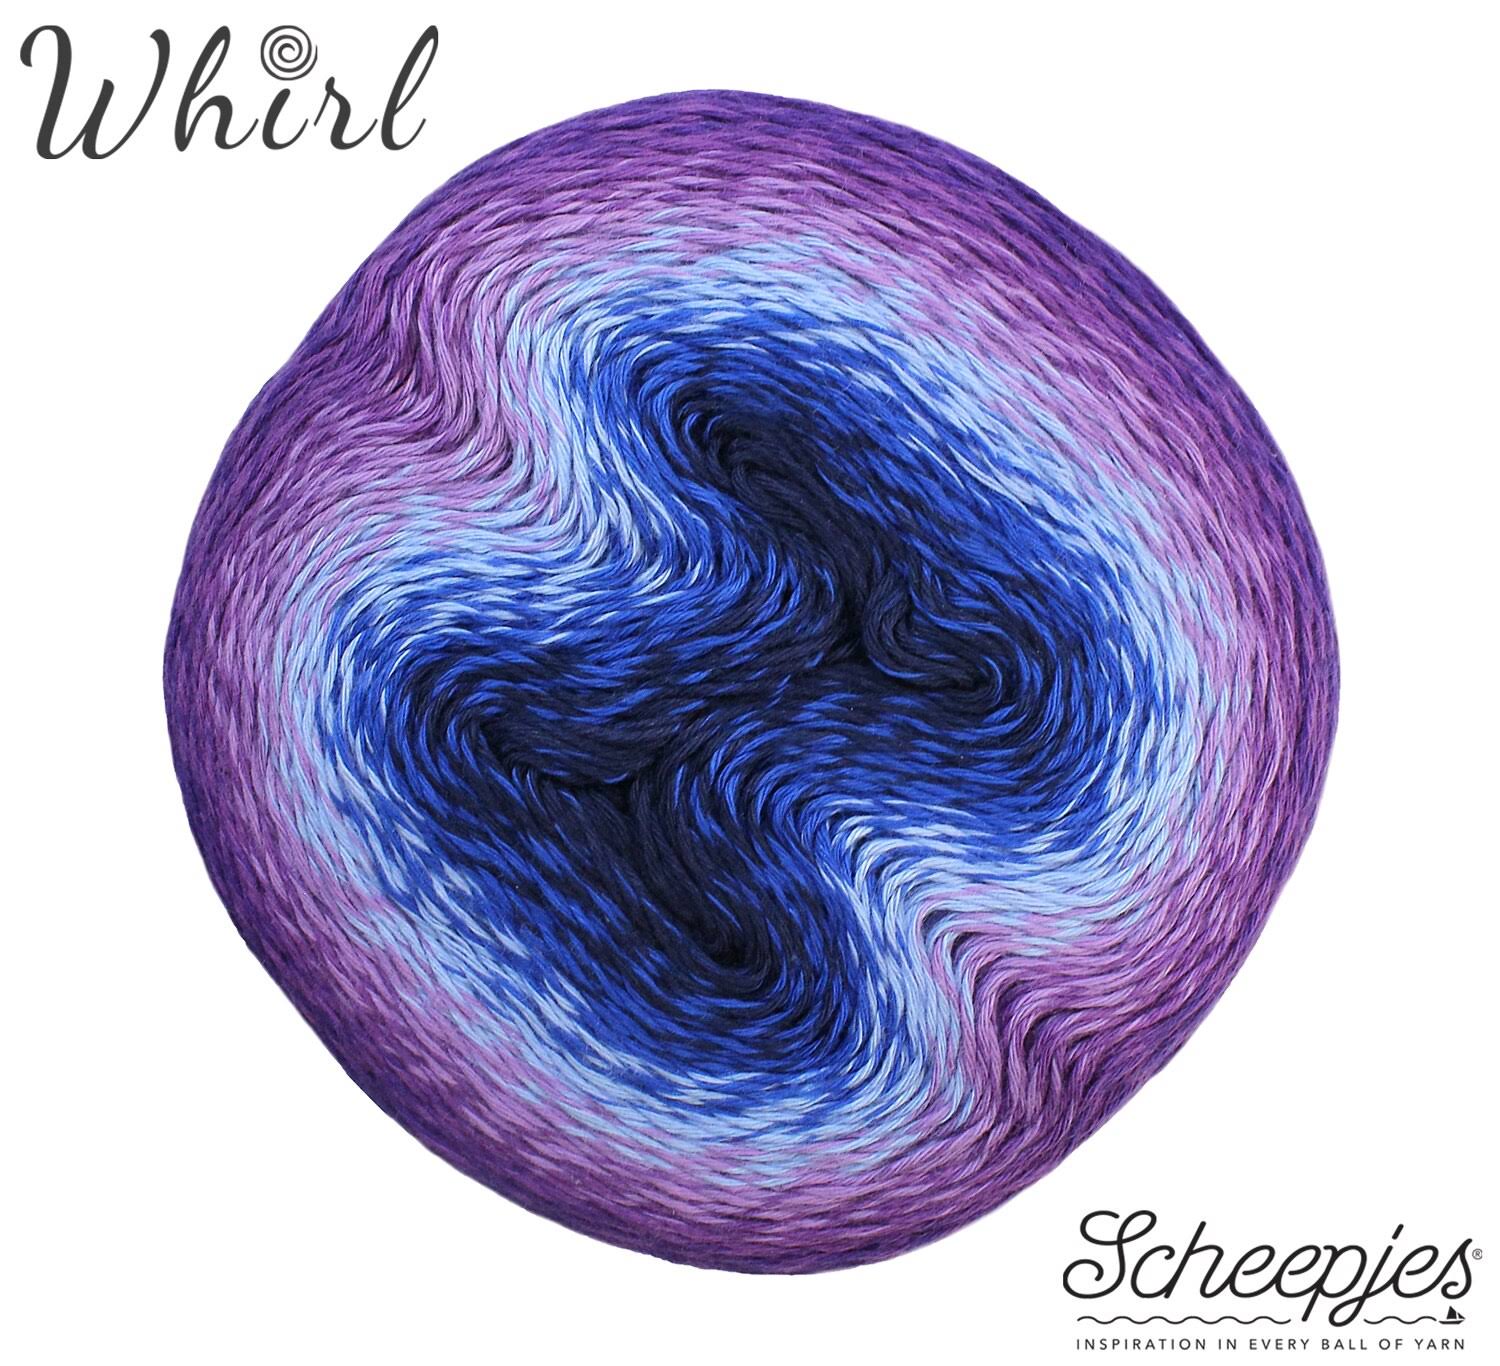 Scheepjes Whirl Yarn - 783 Brambleberry